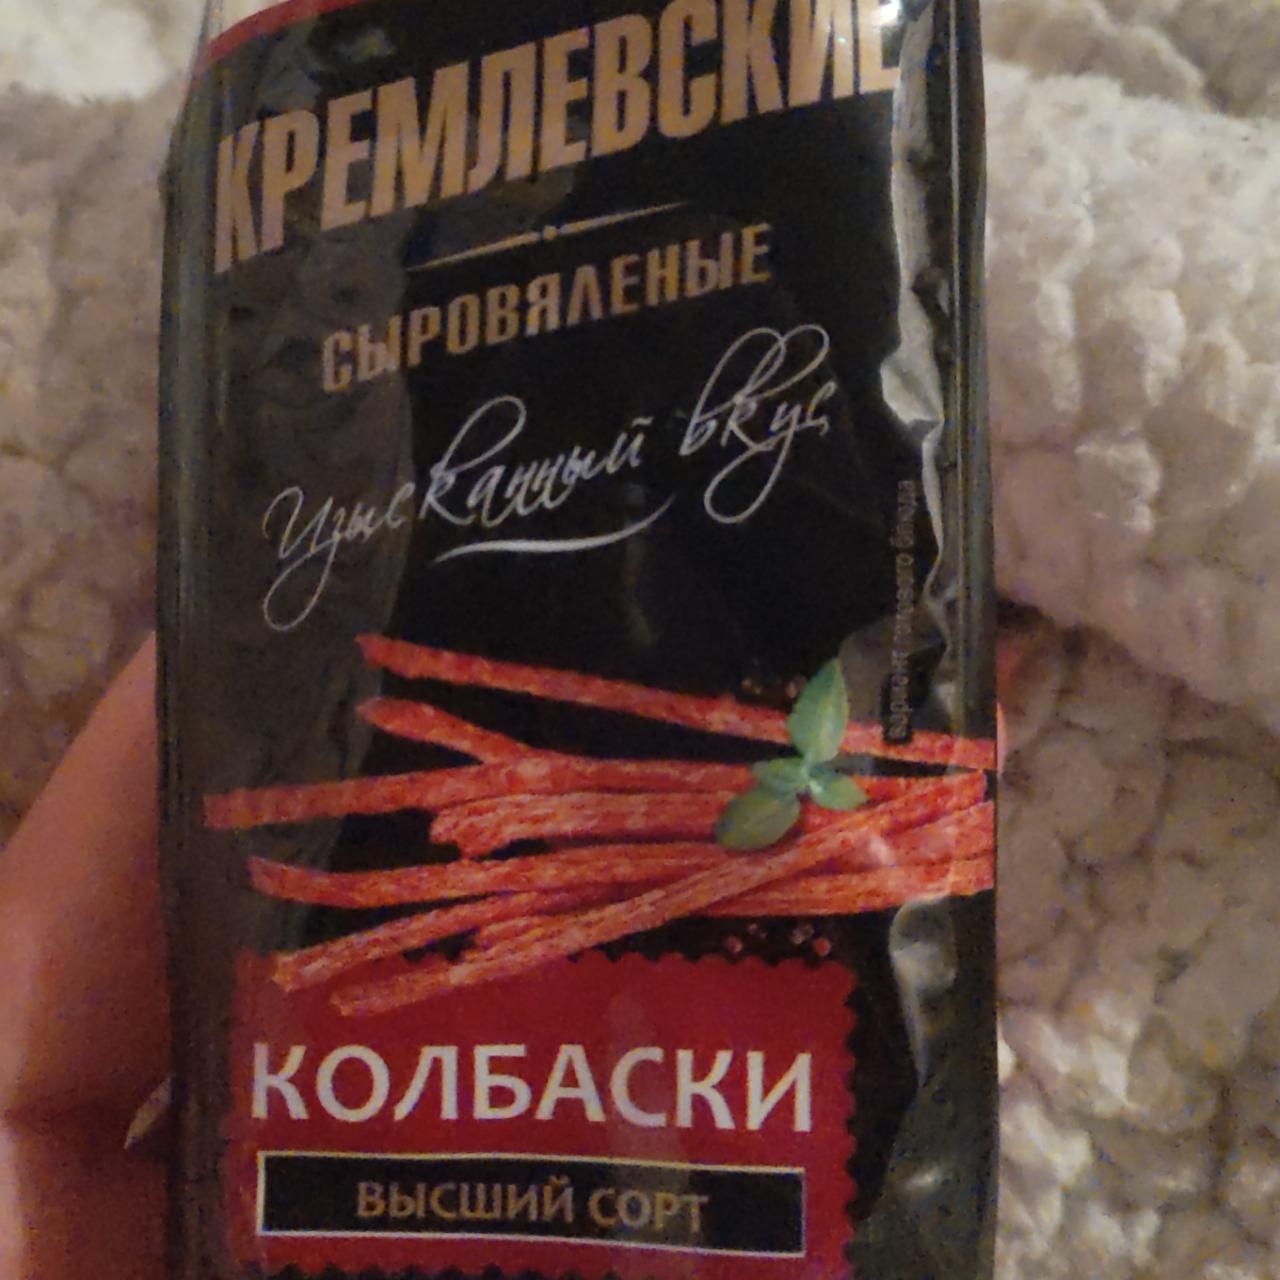 Фото - Кремлевские сыровяленые колбаски Славянские продукты